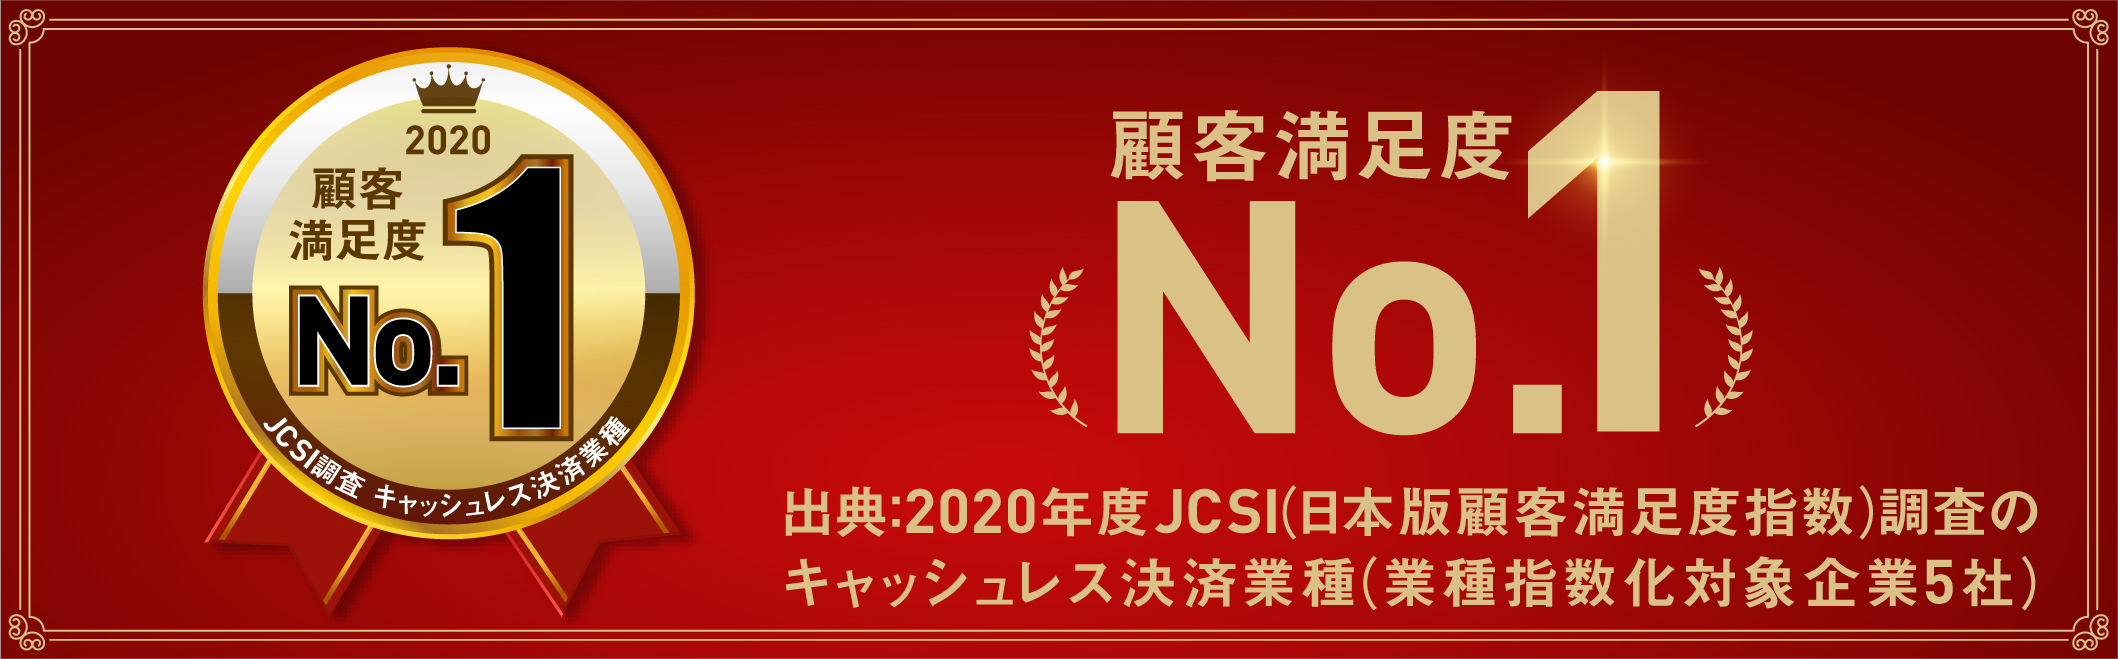 年度 Jcsi 日本版顧客満足度指数 調査キャッシュレス決済no 1獲得 に関するお知らせ Dポイントがたまるスマホ決済 D払い ドコモ払い